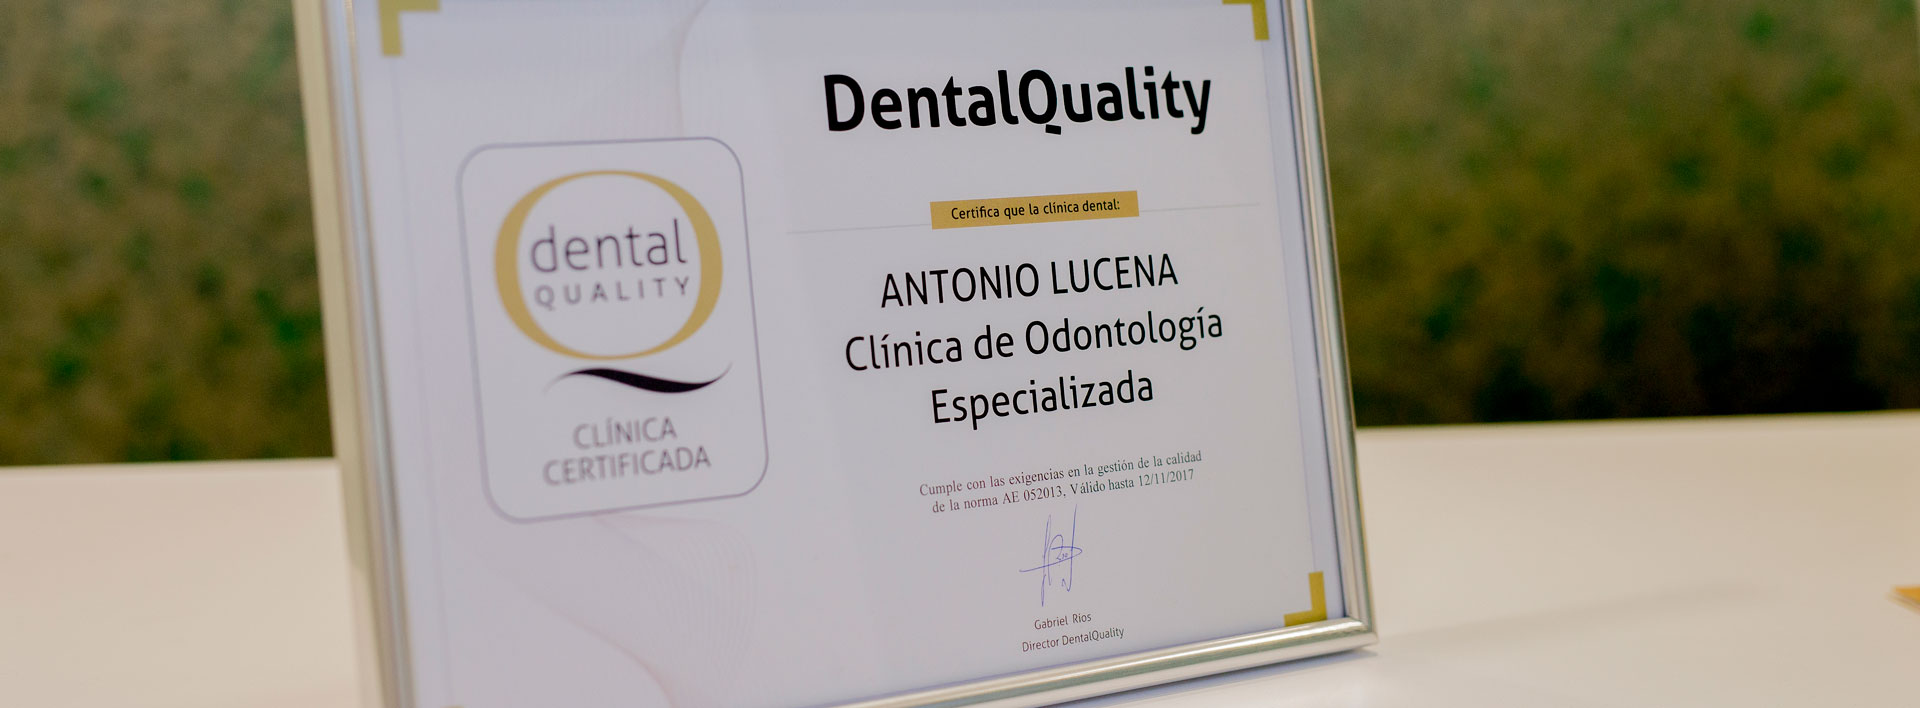 Certificado Dental Quality Clínica de odontología Antonio Lucena